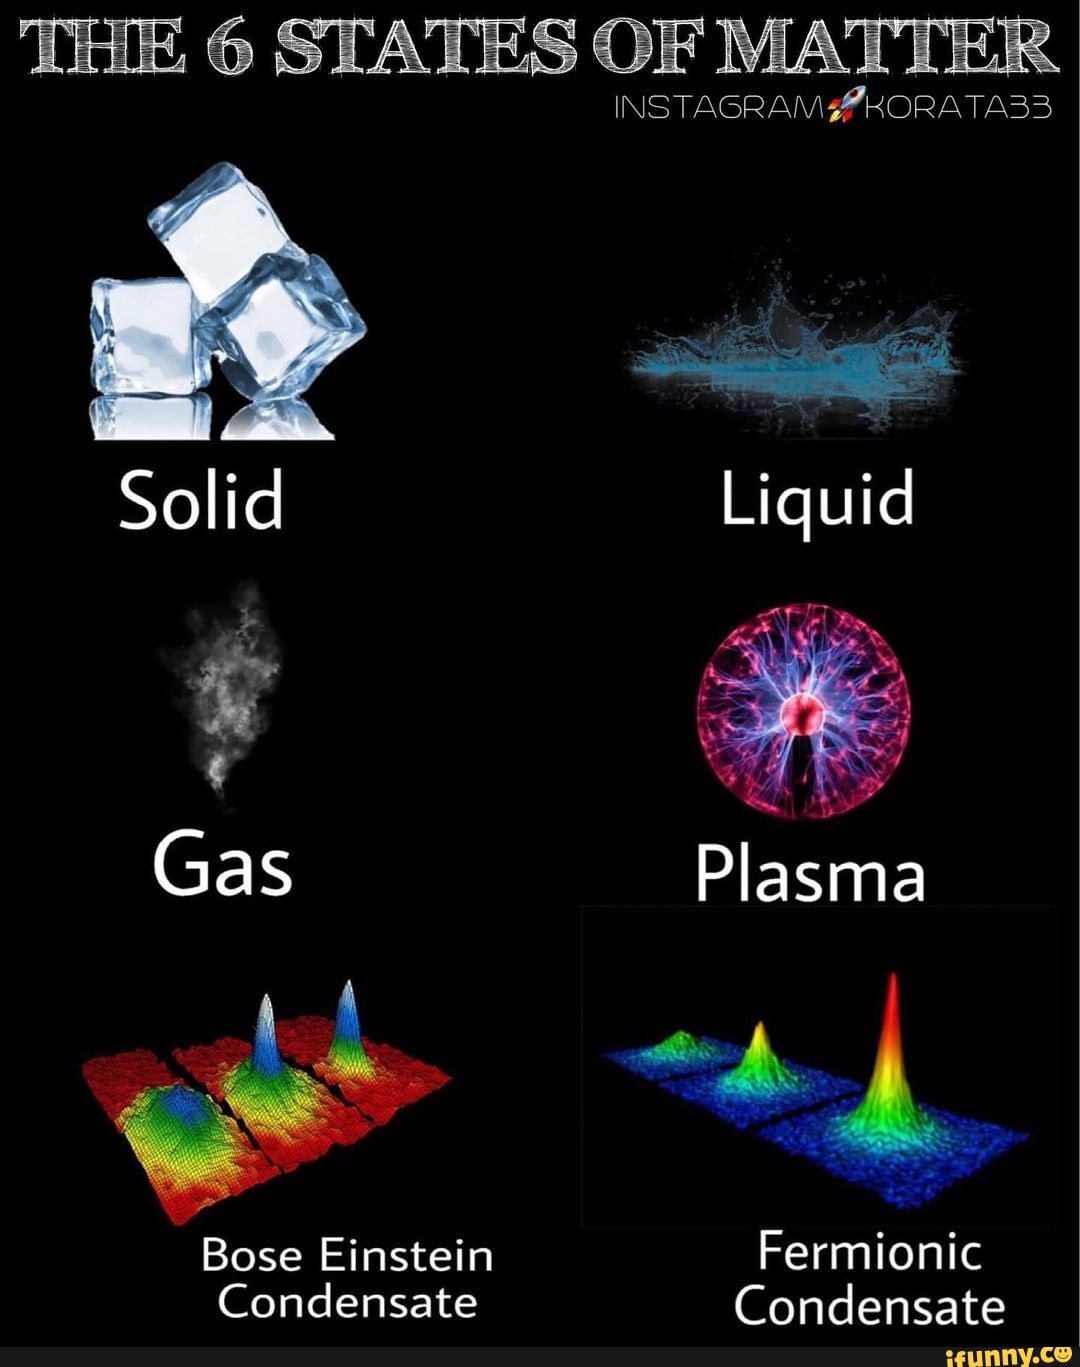 states of matter plasma